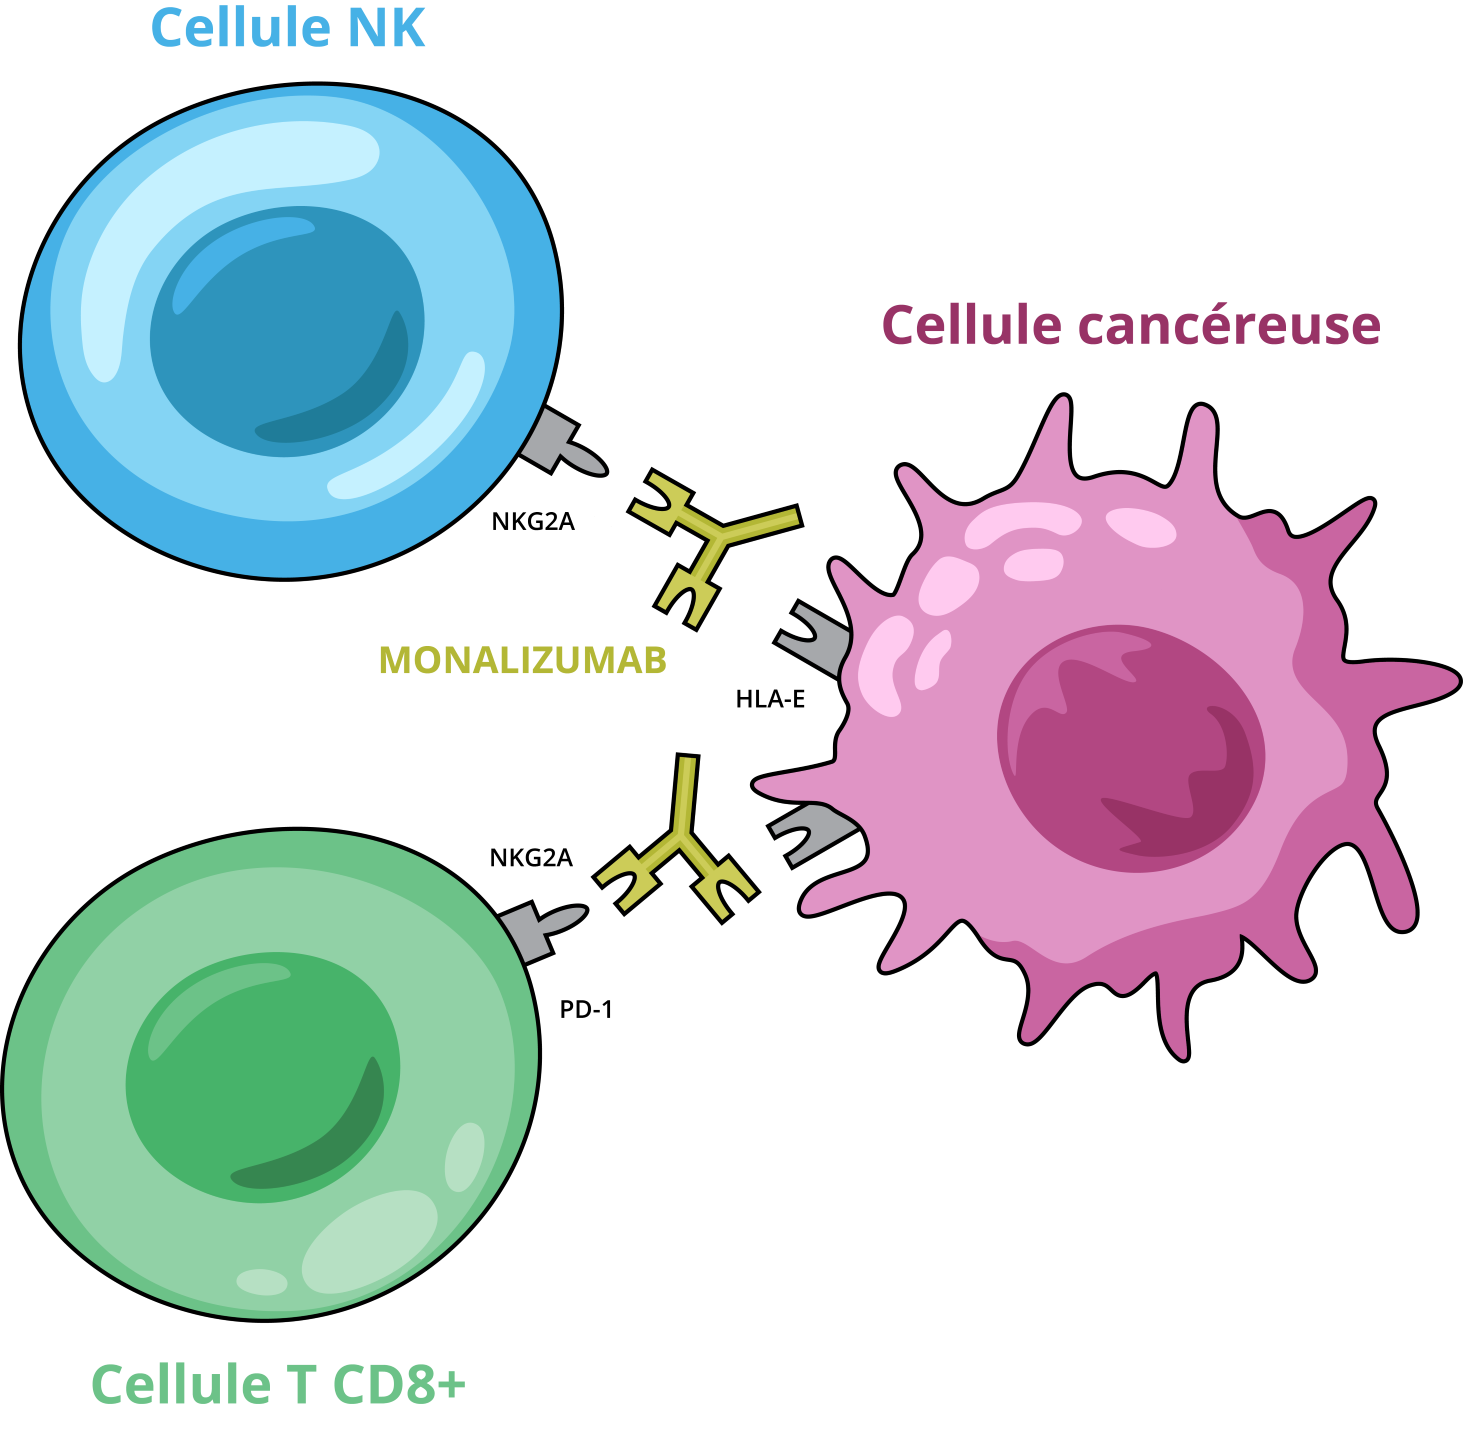 Mécanisme d'action monalizumab